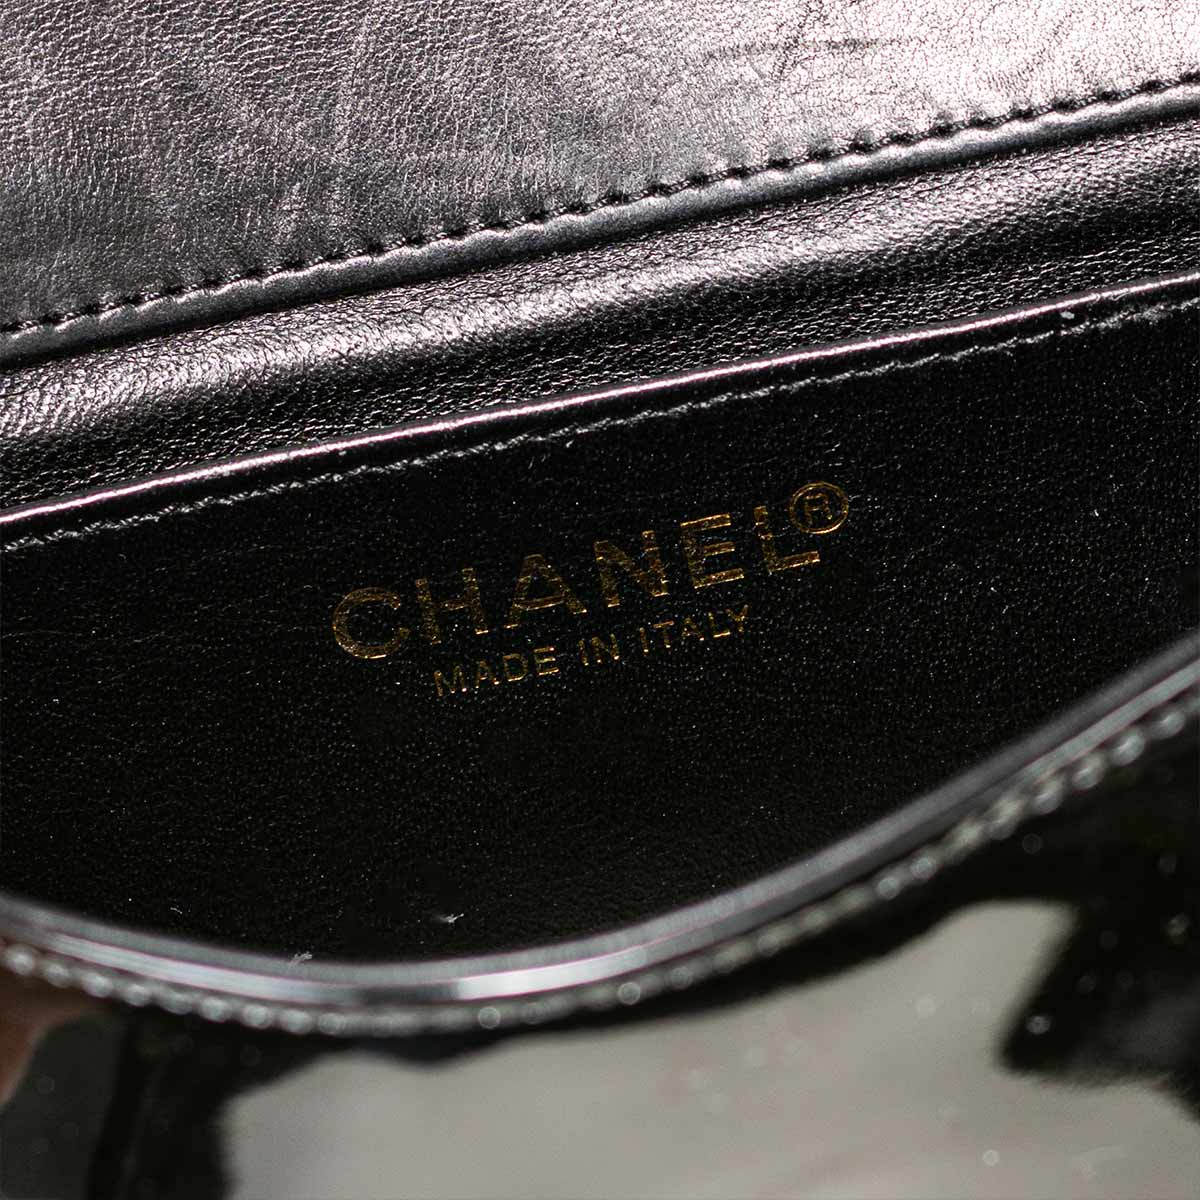 Chanel Mini Patent Camillia Bag